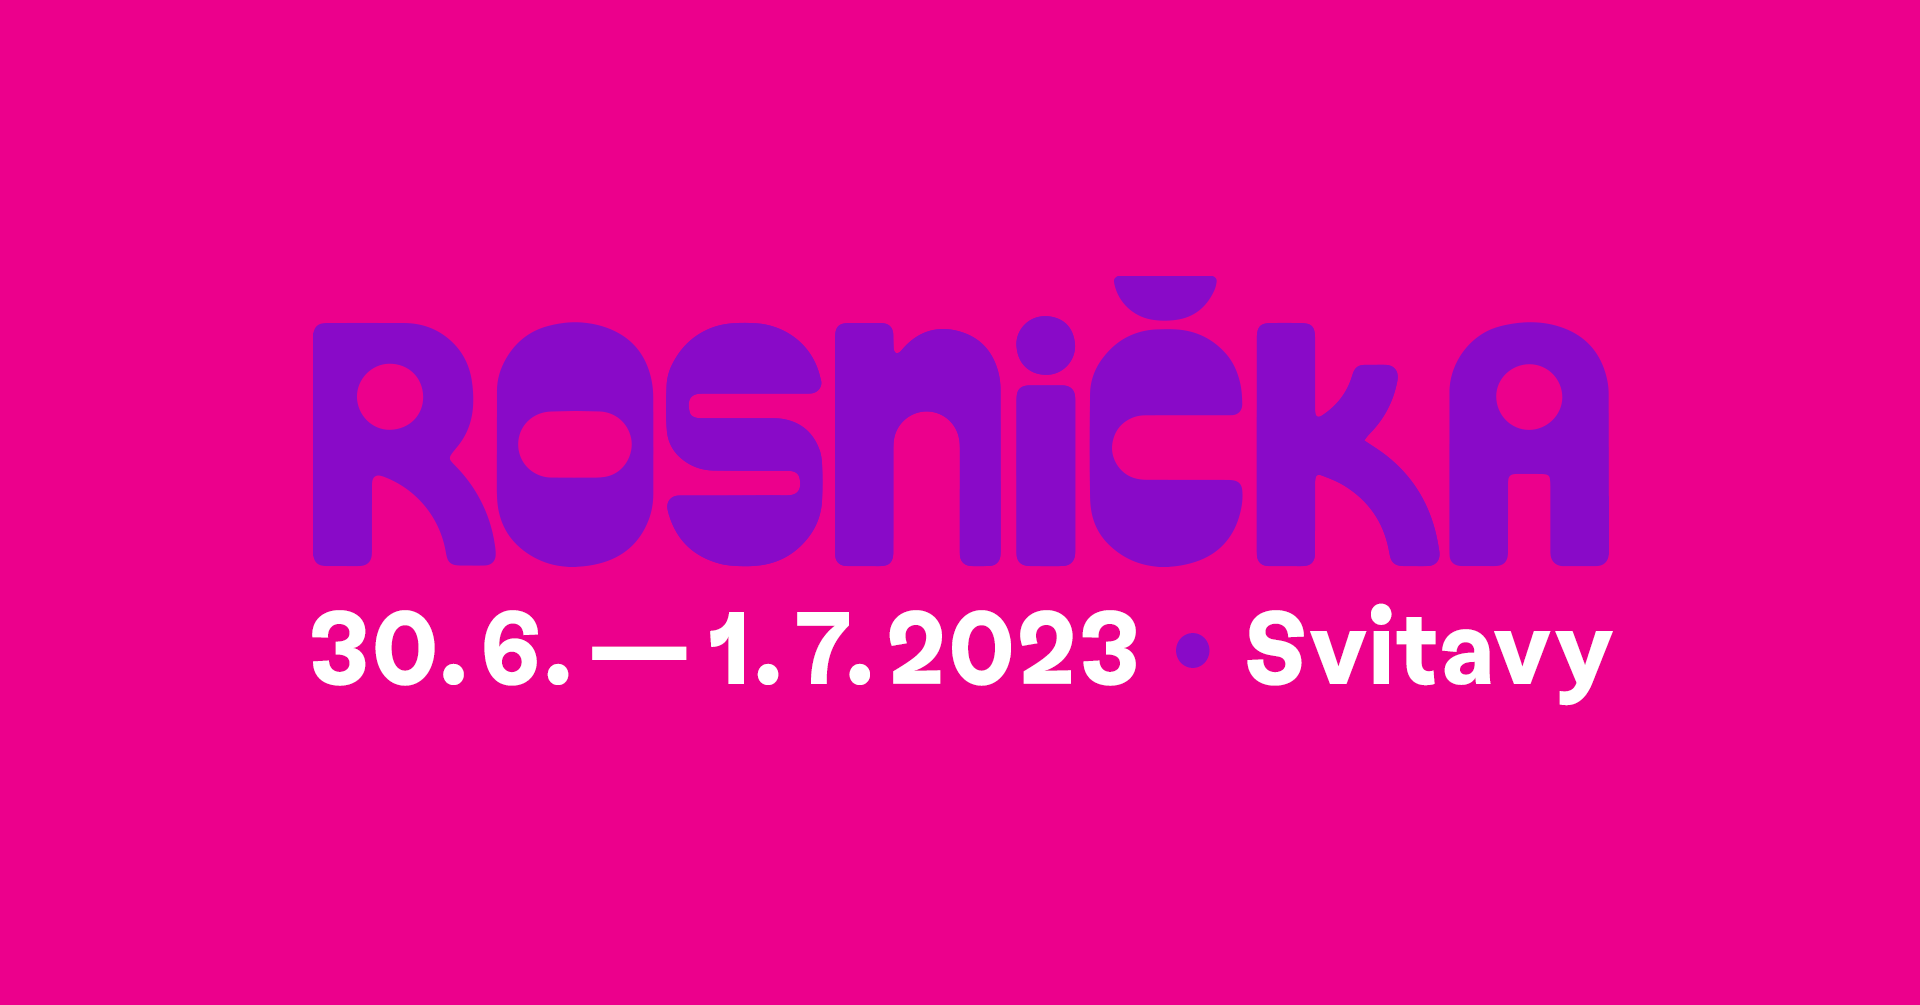 Festival Rosnicka 2023